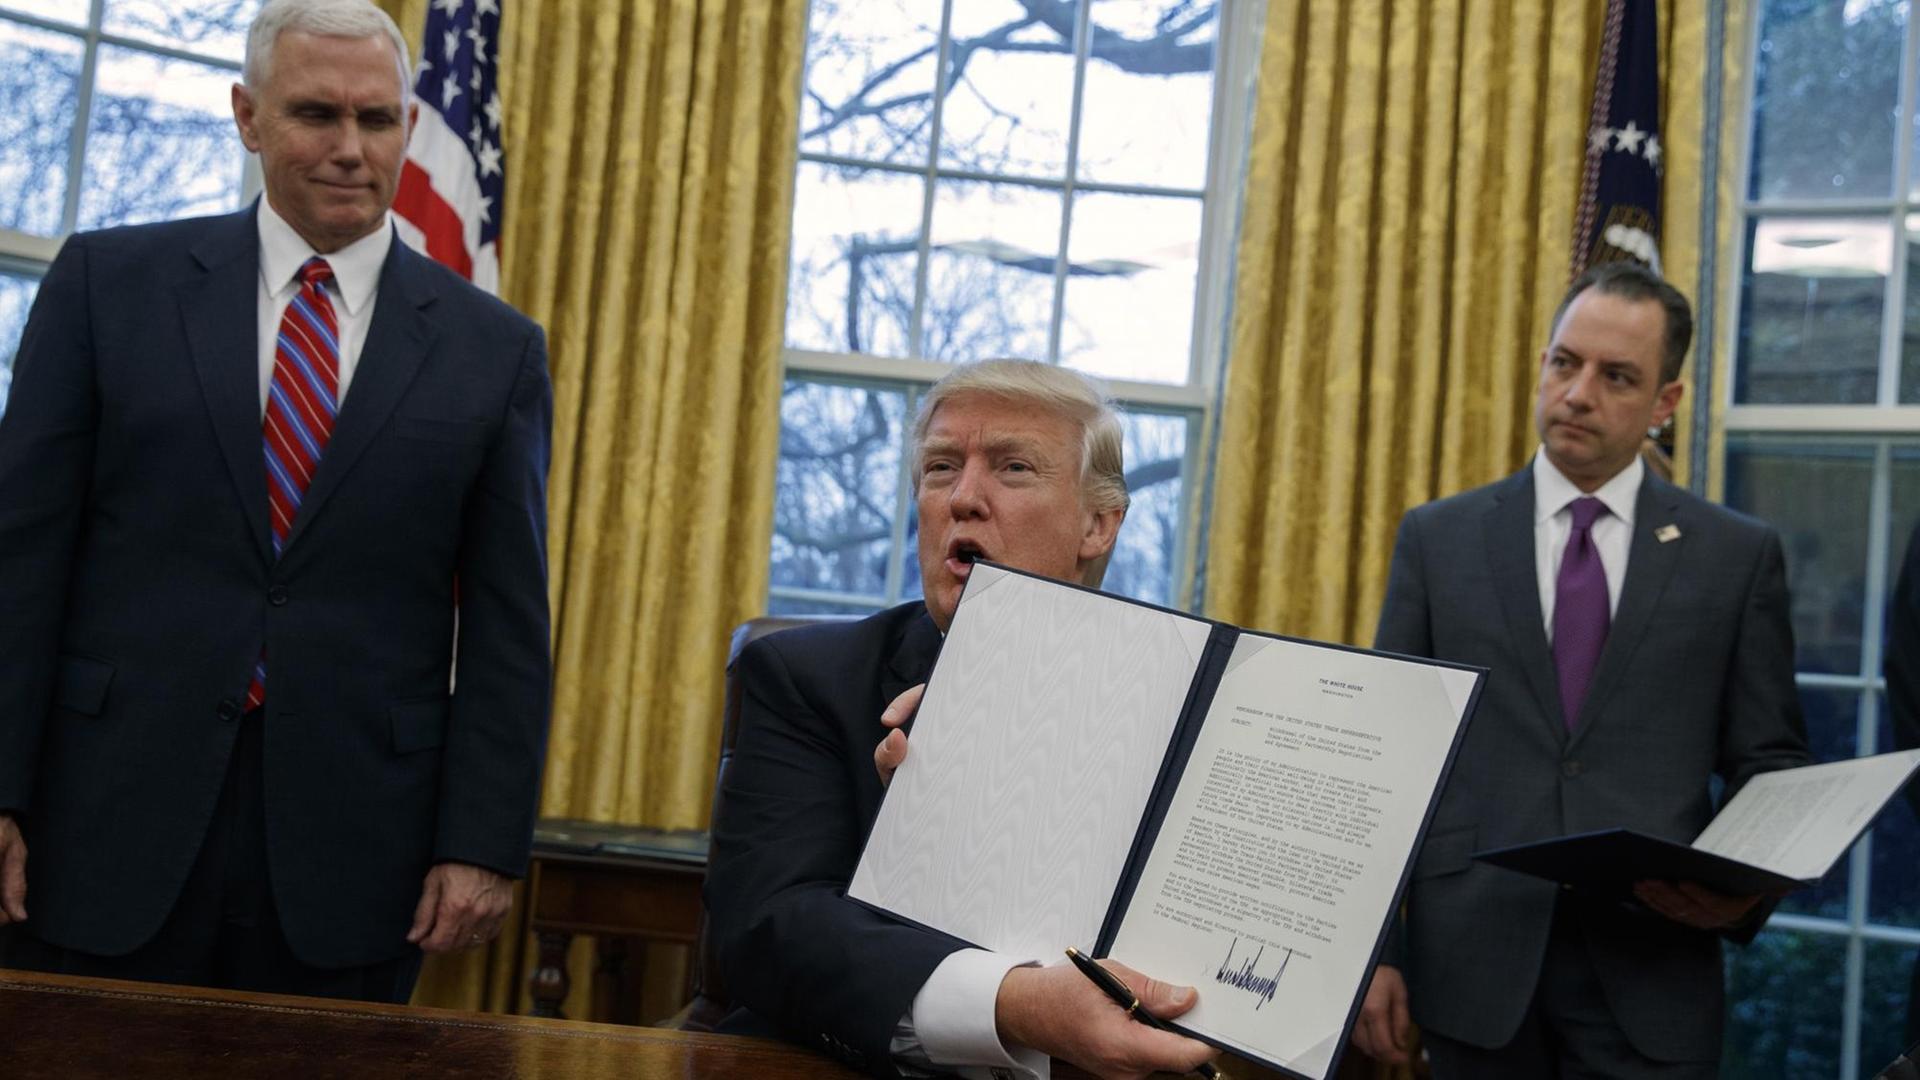 US-Präsident Donald Trump (m.) mit dem Dektret zum Ausstieg aus dem Handelsabkommen TPP. Links ist Vize-Präsident Mike Pence, rechts ist der Stabschef im Weißen Haus, Reince Priebus, zu sehen.